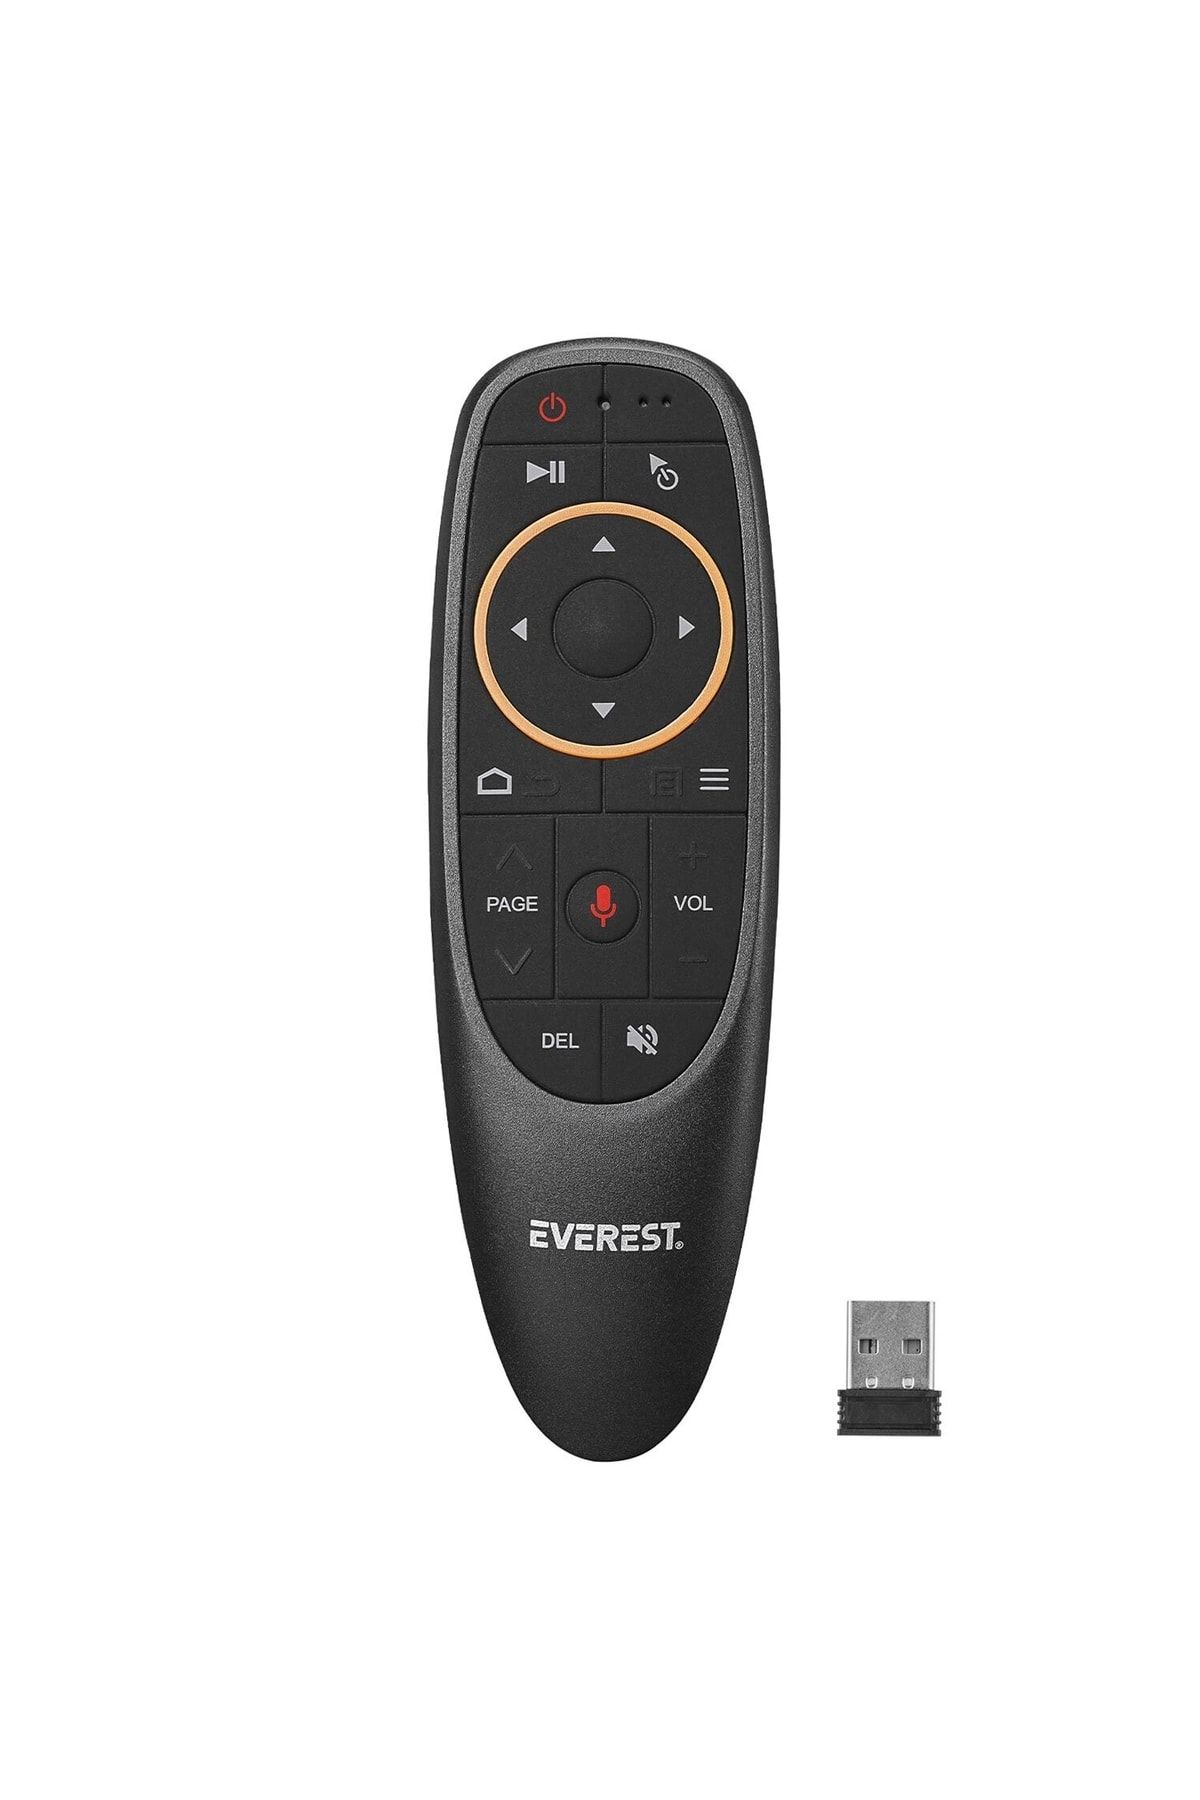 Everest Kumanda Smart Tv Fly Air Mouse Sesli Komut Tv Box Pc Telefon Ev-hm20